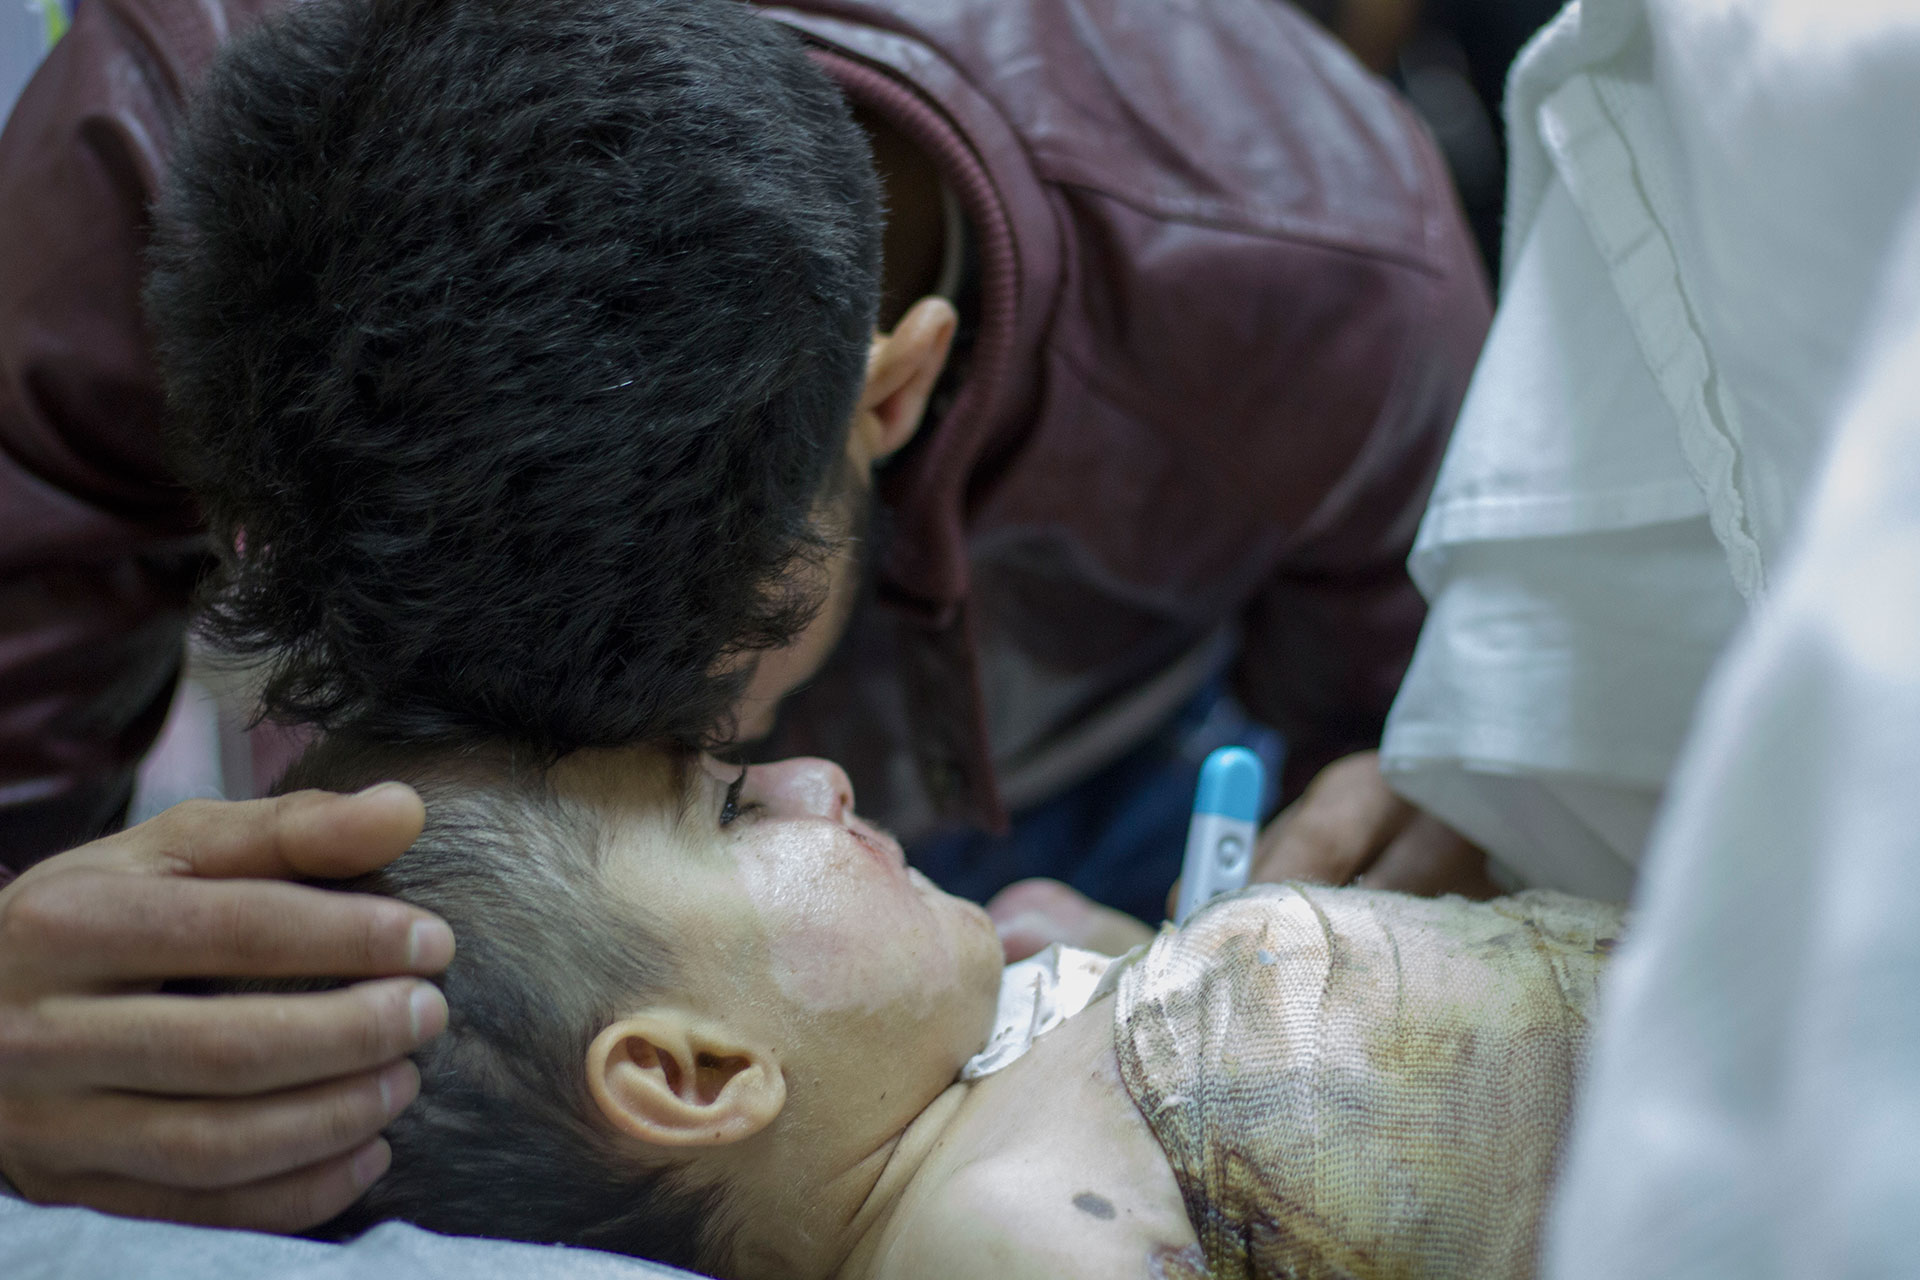 Nabaz mista den fem år gamle sonen sin Barez då ein gasstank i teltet deira eksploderte. Kona Bayan og sonen Bahez (2) overlevde så vidt. Foto: Siri Bråtveit